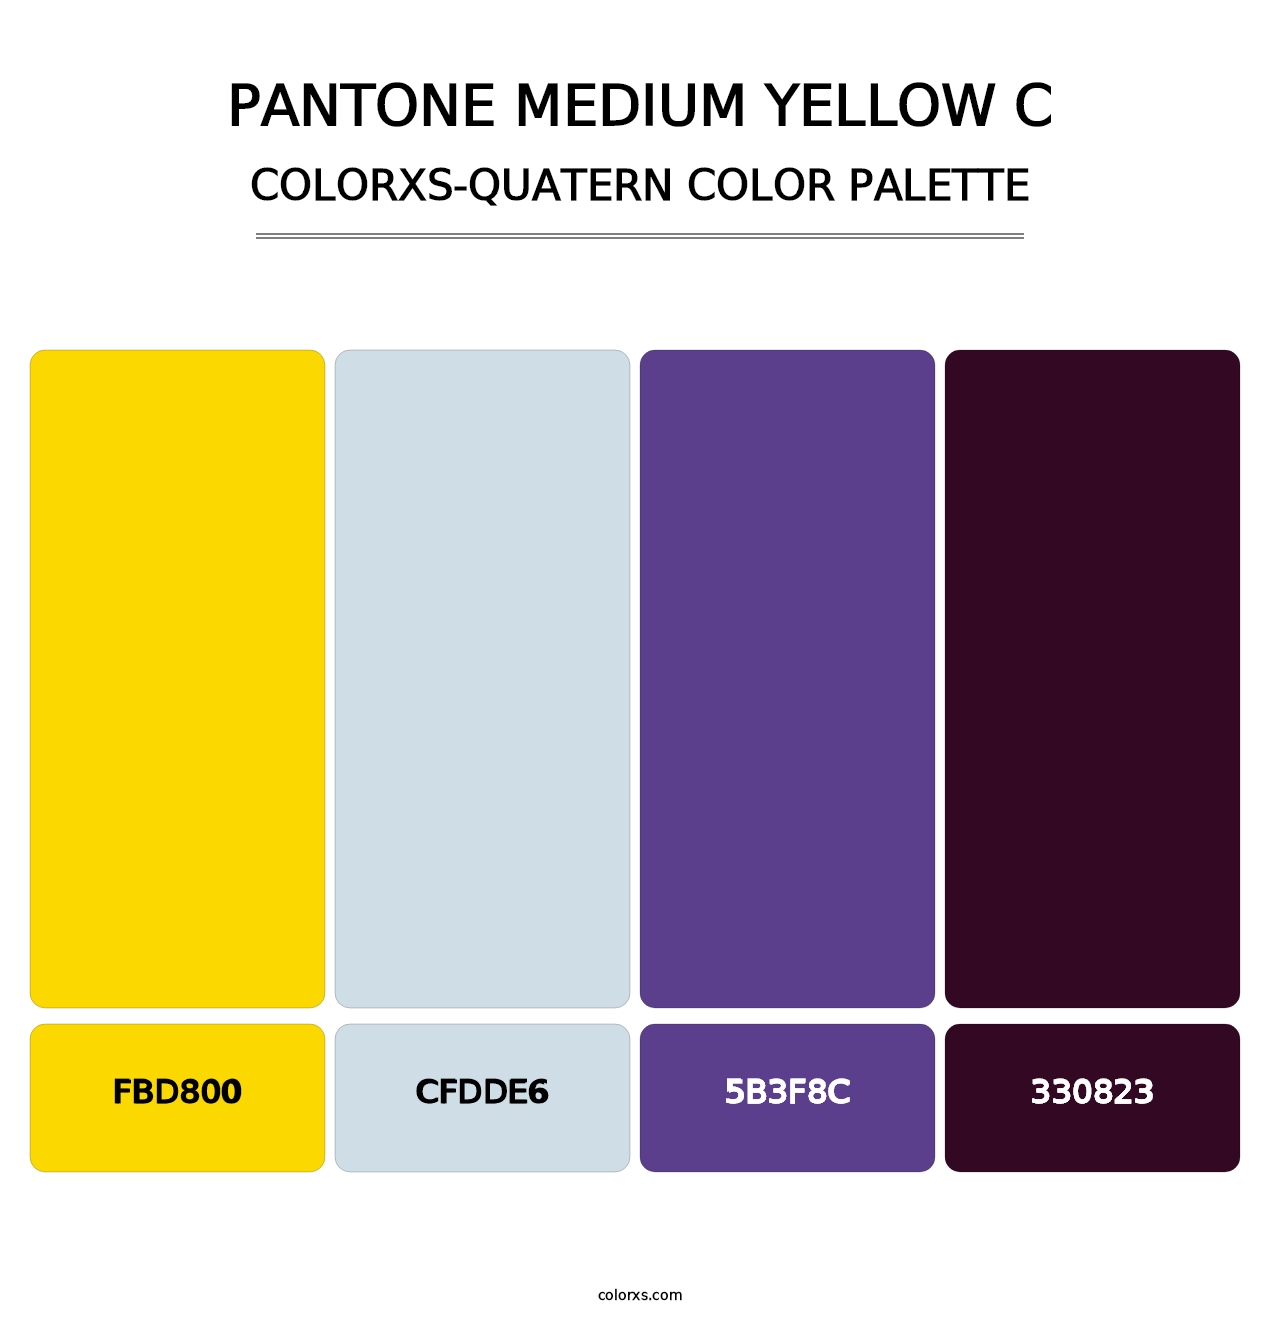 PANTONE Medium Yellow C - Colorxs Quatern Palette